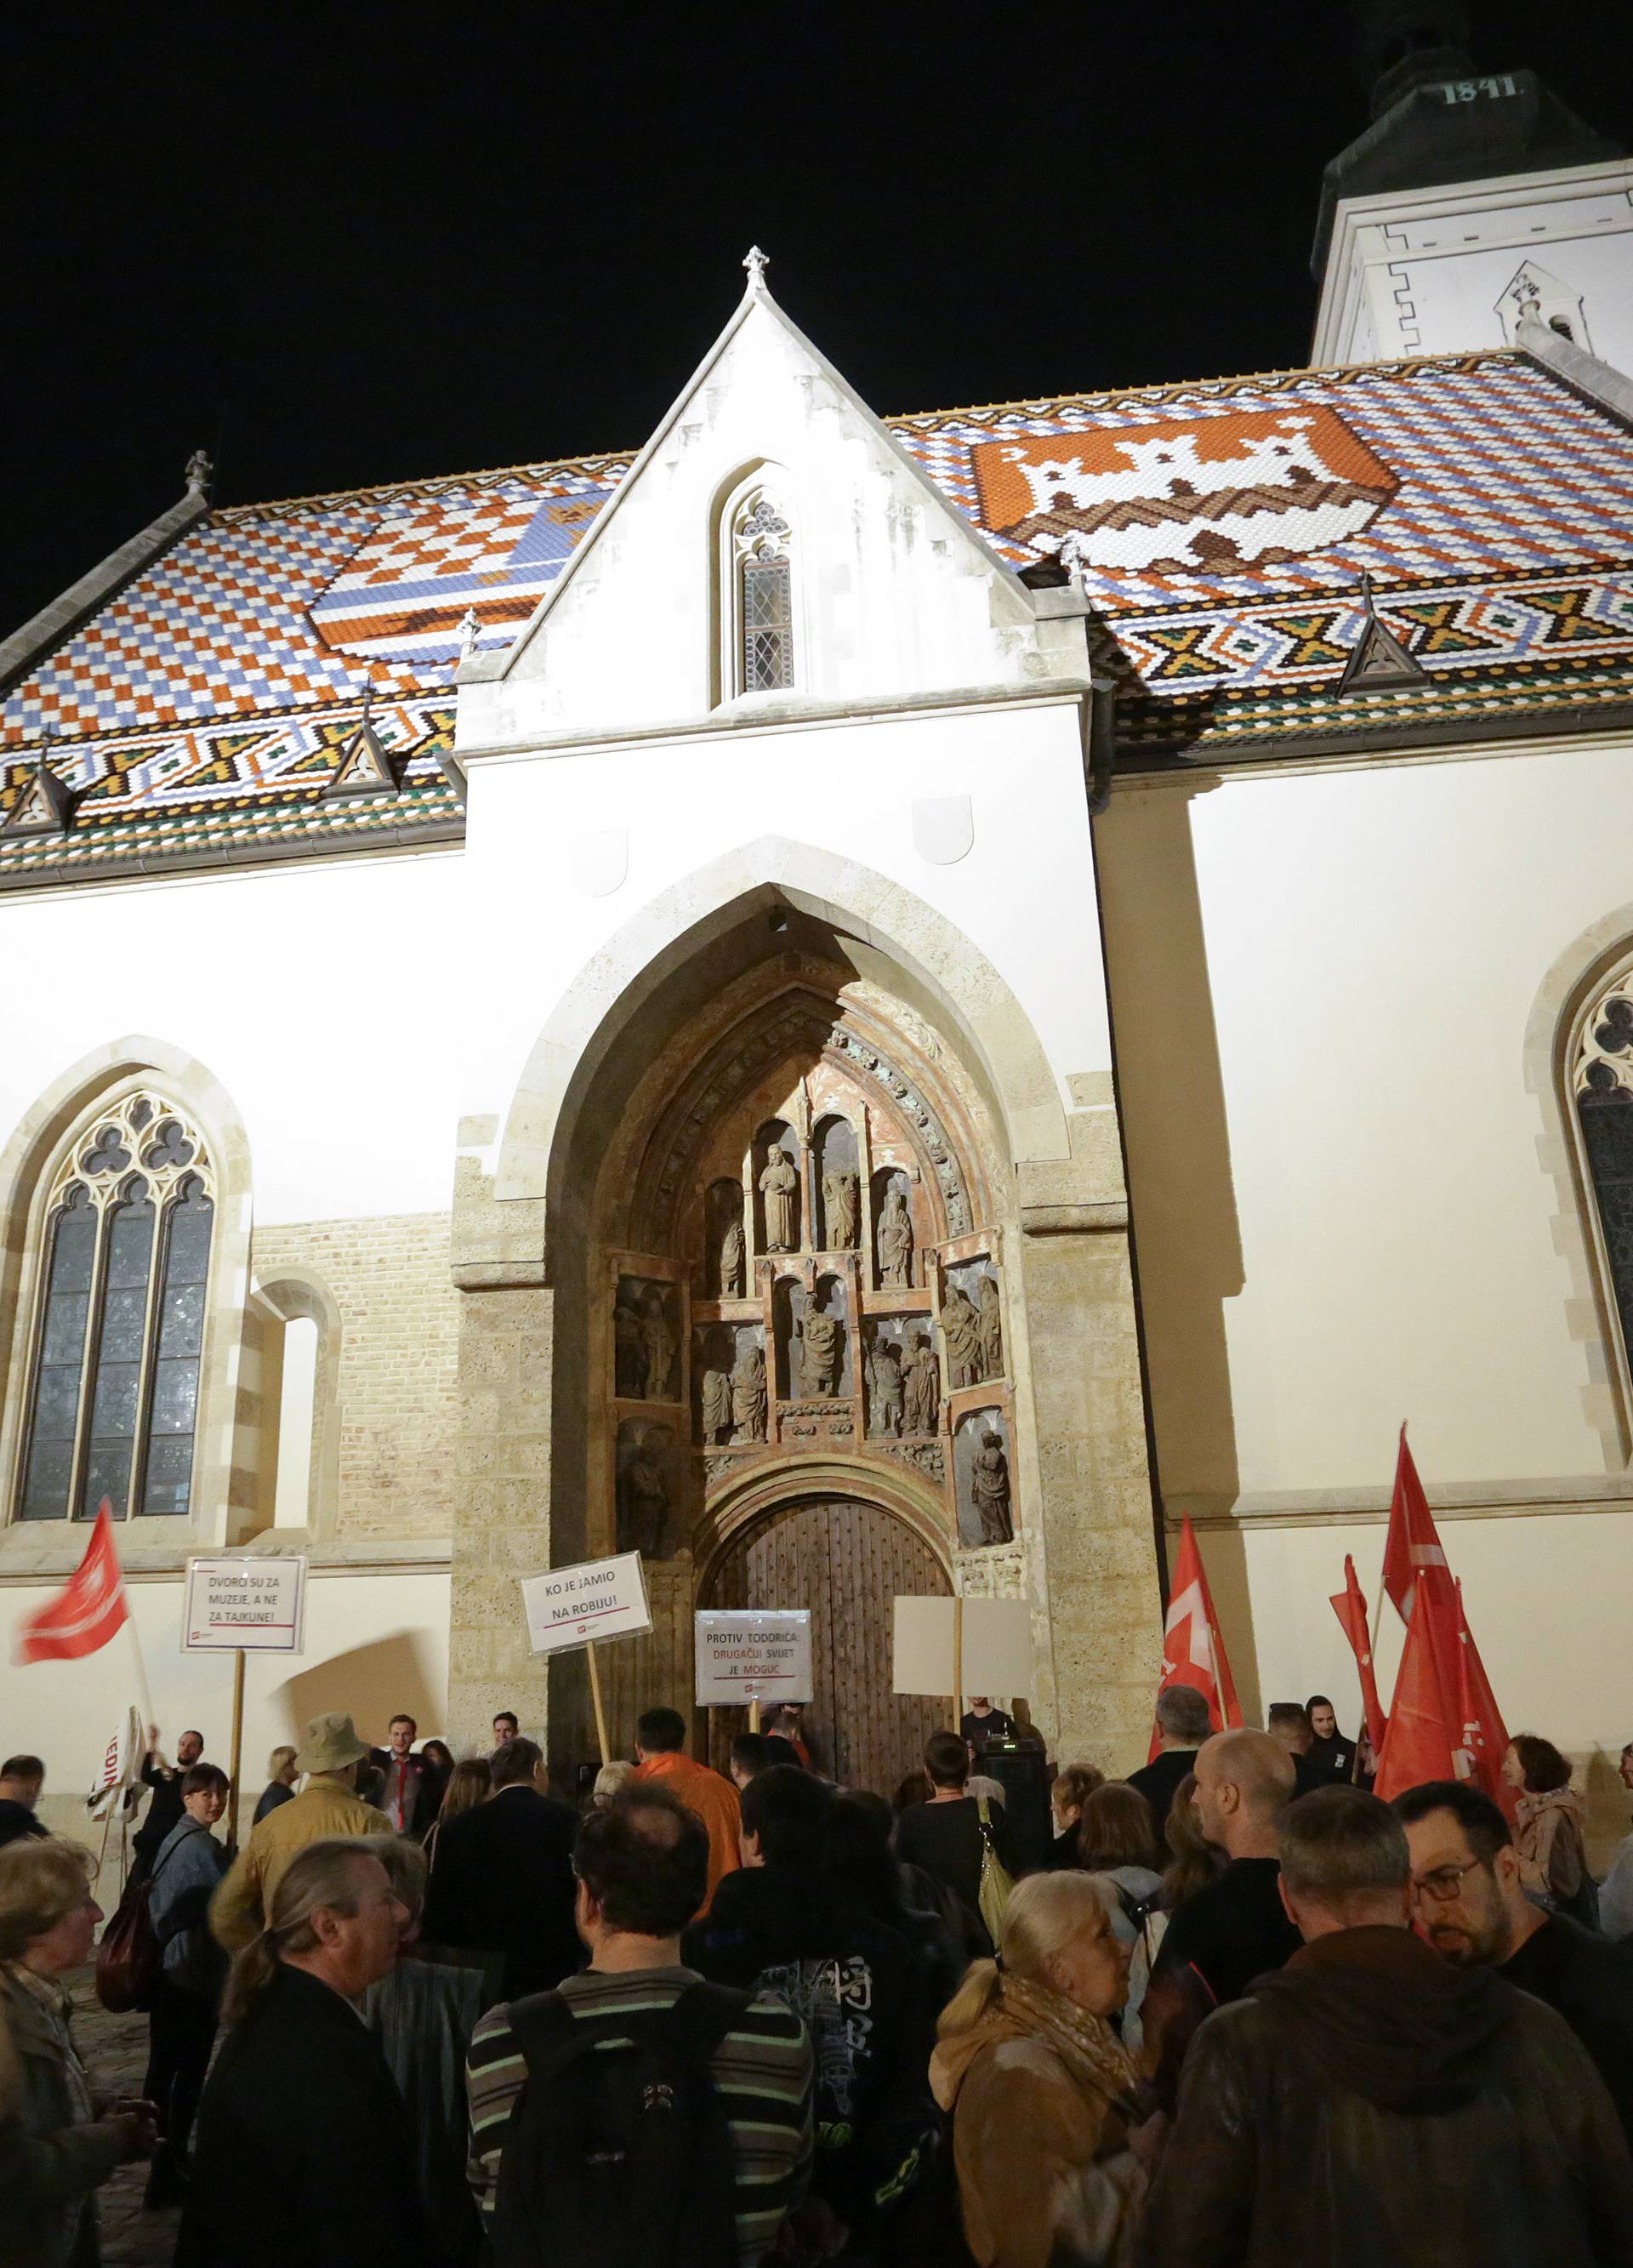 Na Markovom trgu: Održao se mirni prosvjed protiv Todorića